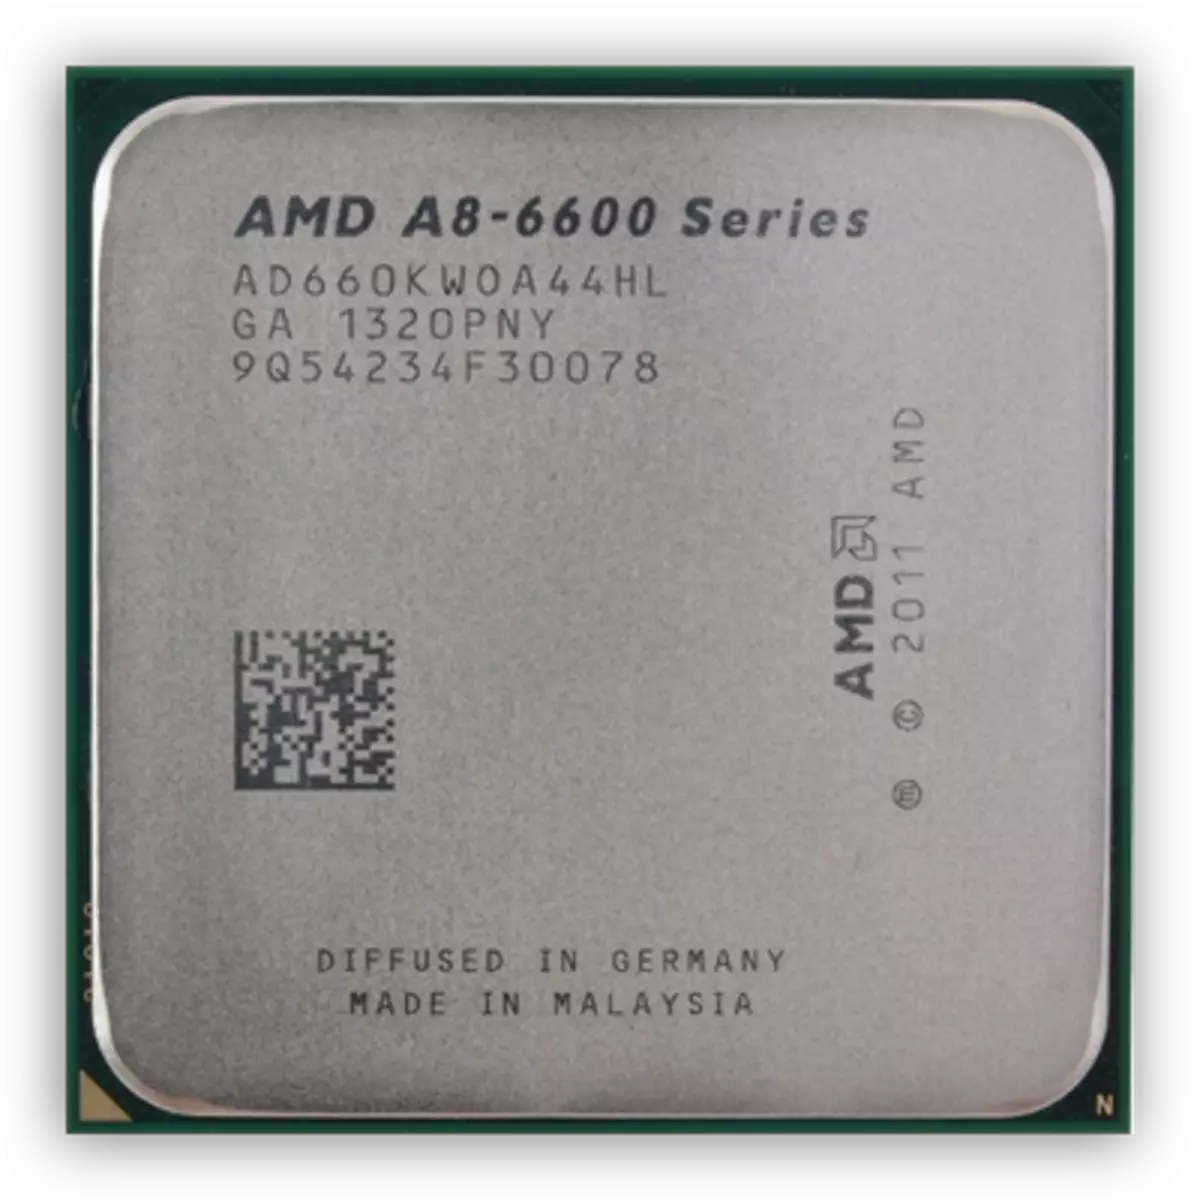 रिचलैंड आर्किटेक्चर पर एएमडी ए 8 6600 के प्रोसेसर